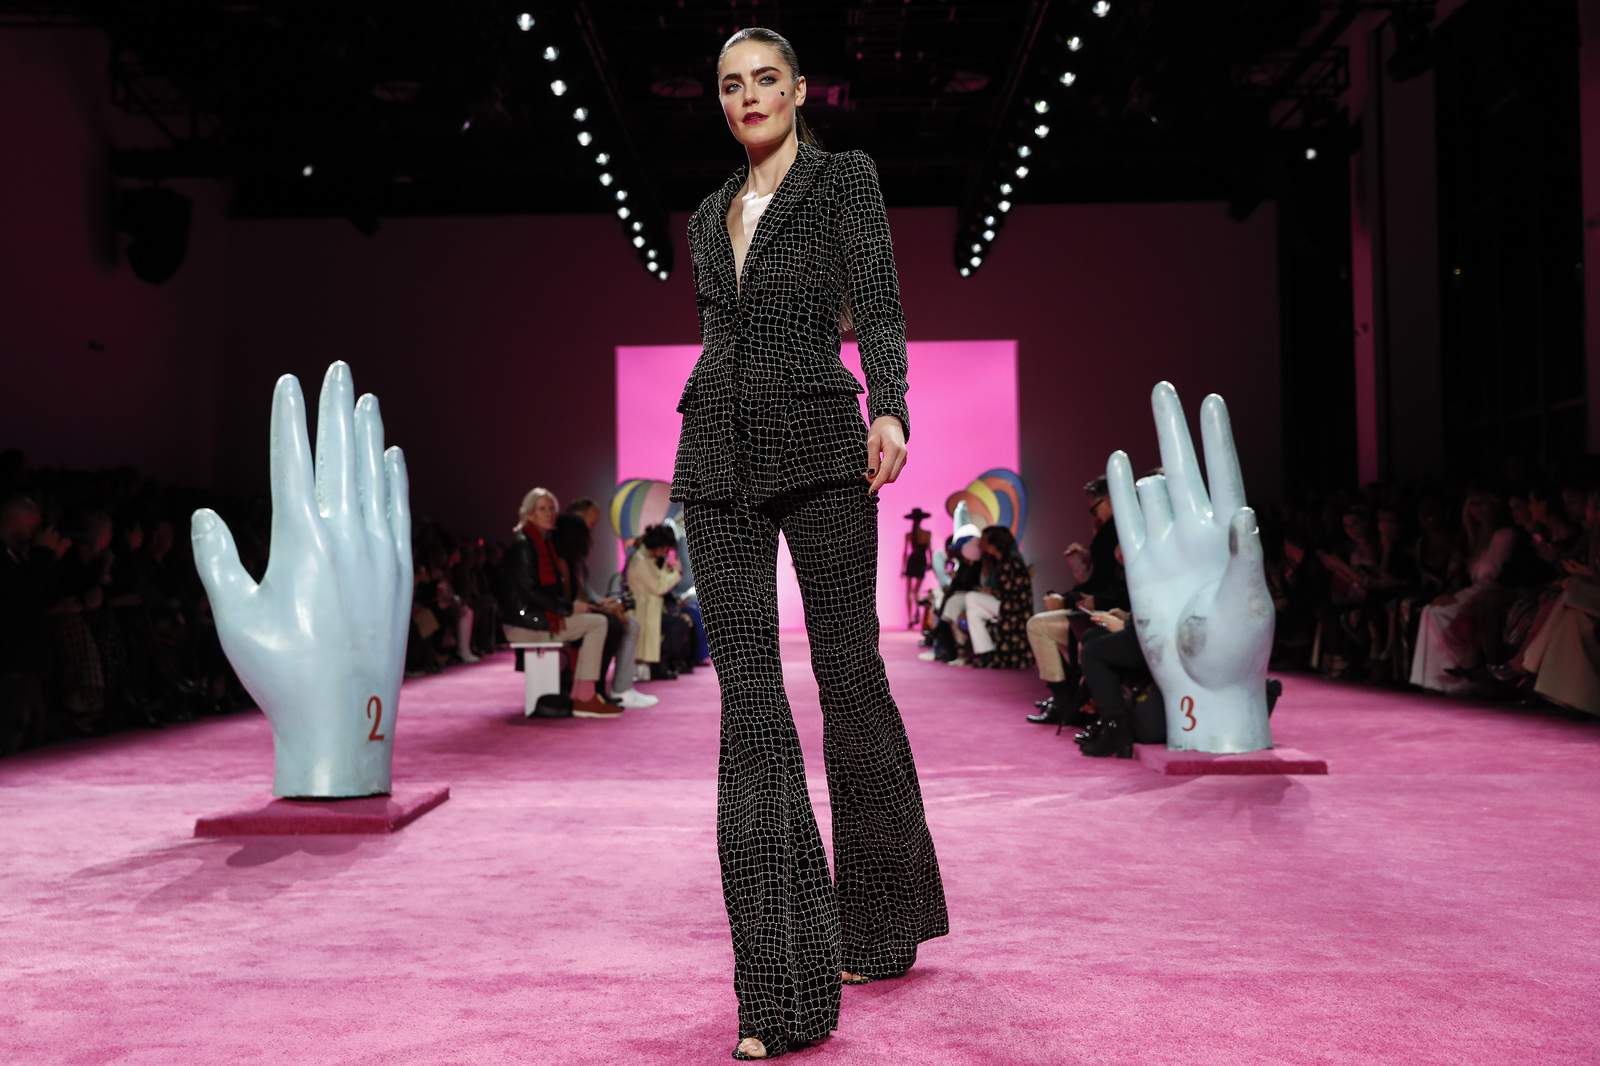 NY Fashion Week 2020: Pared down, and virtually all virtual